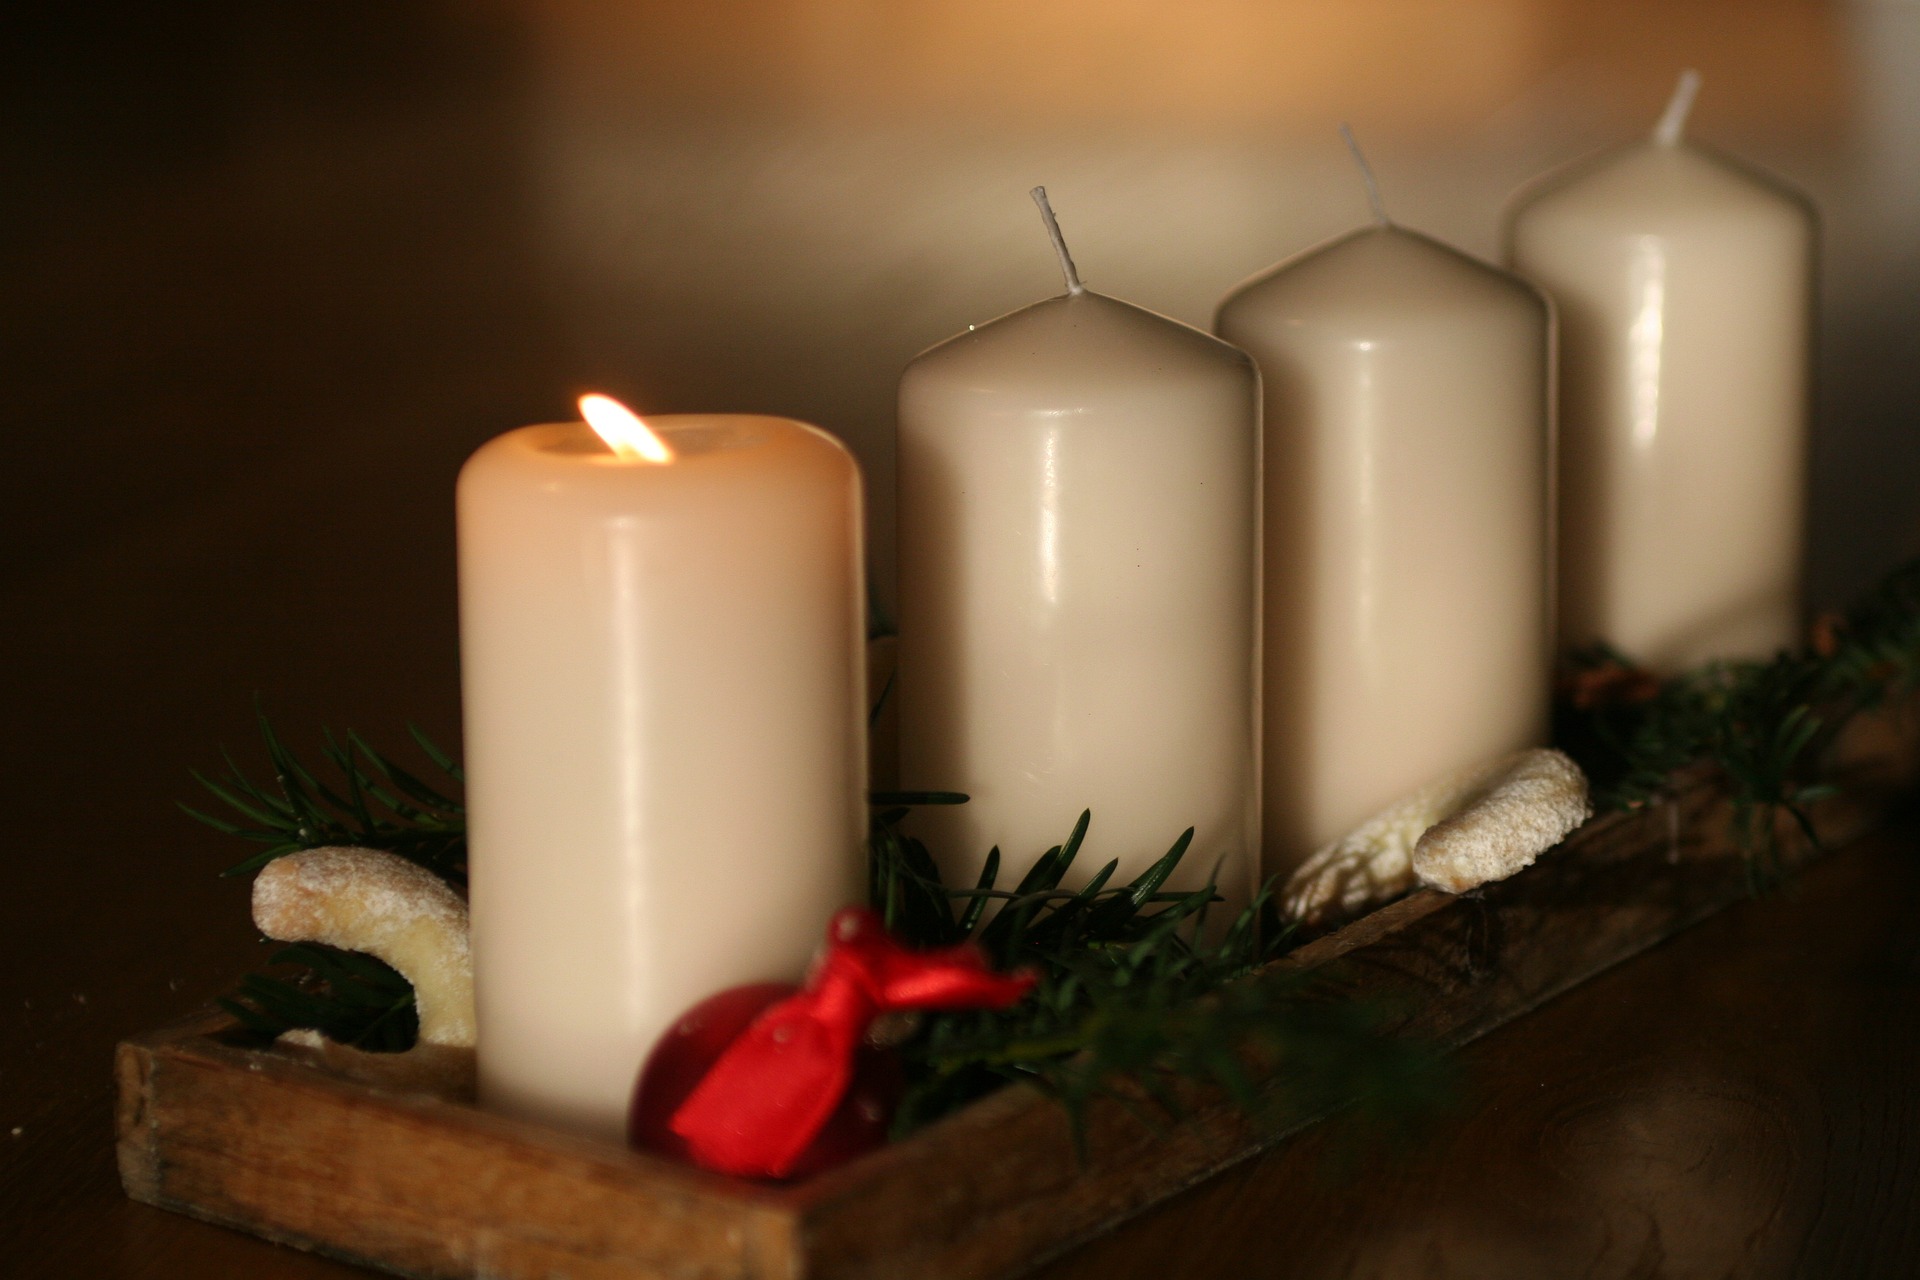 Kuvassa on rivissä neljä kynttilää, joista vasemmanpuolimmaisin palaa.